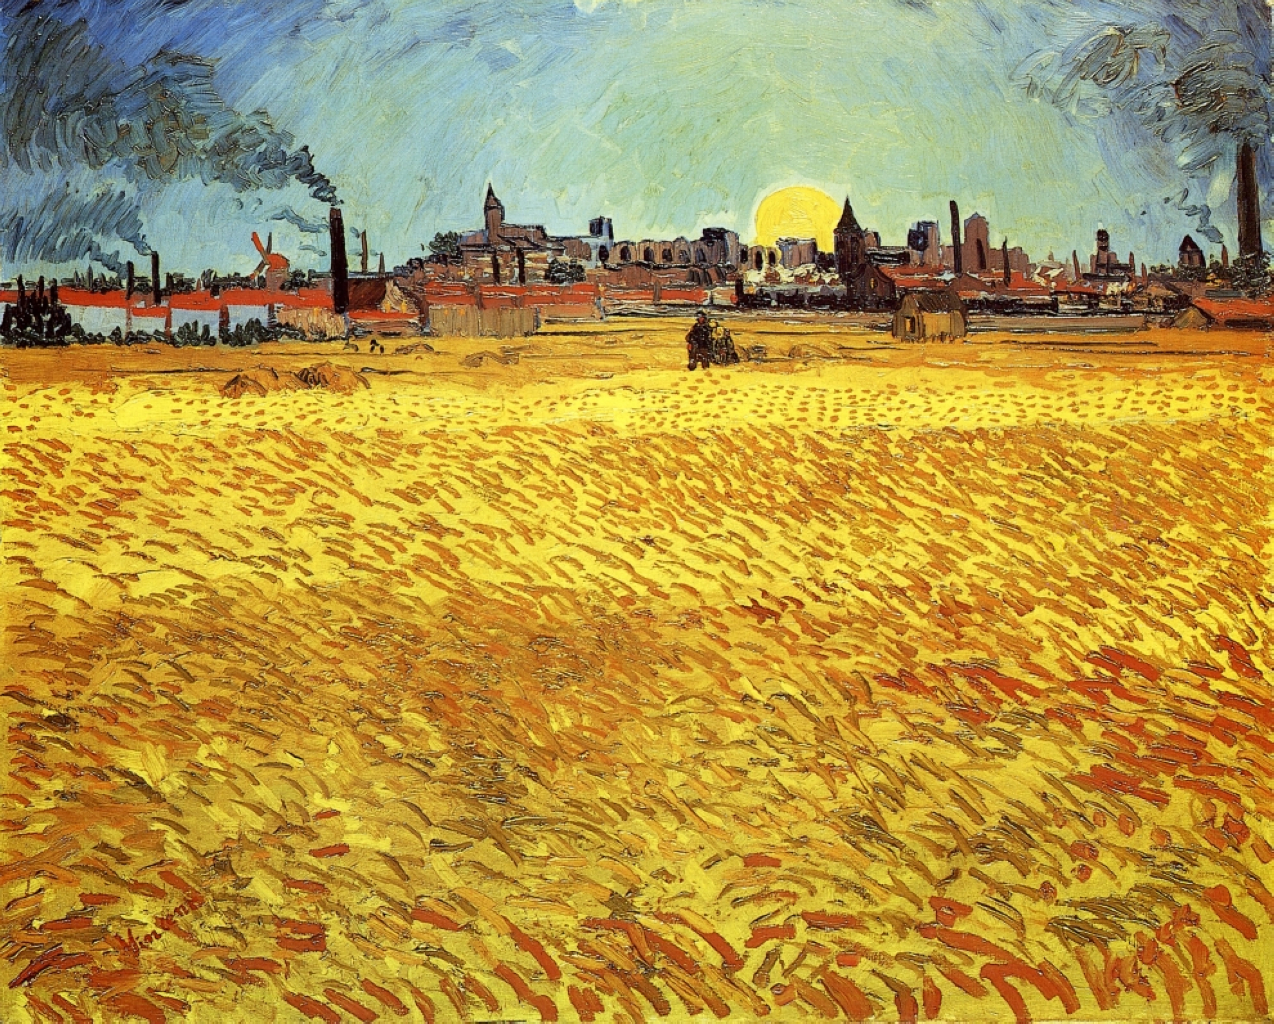 Nyári este, búzamező lenyugvó nappal by Vincent van Gogh - 1888 - 188 x 231 cm 